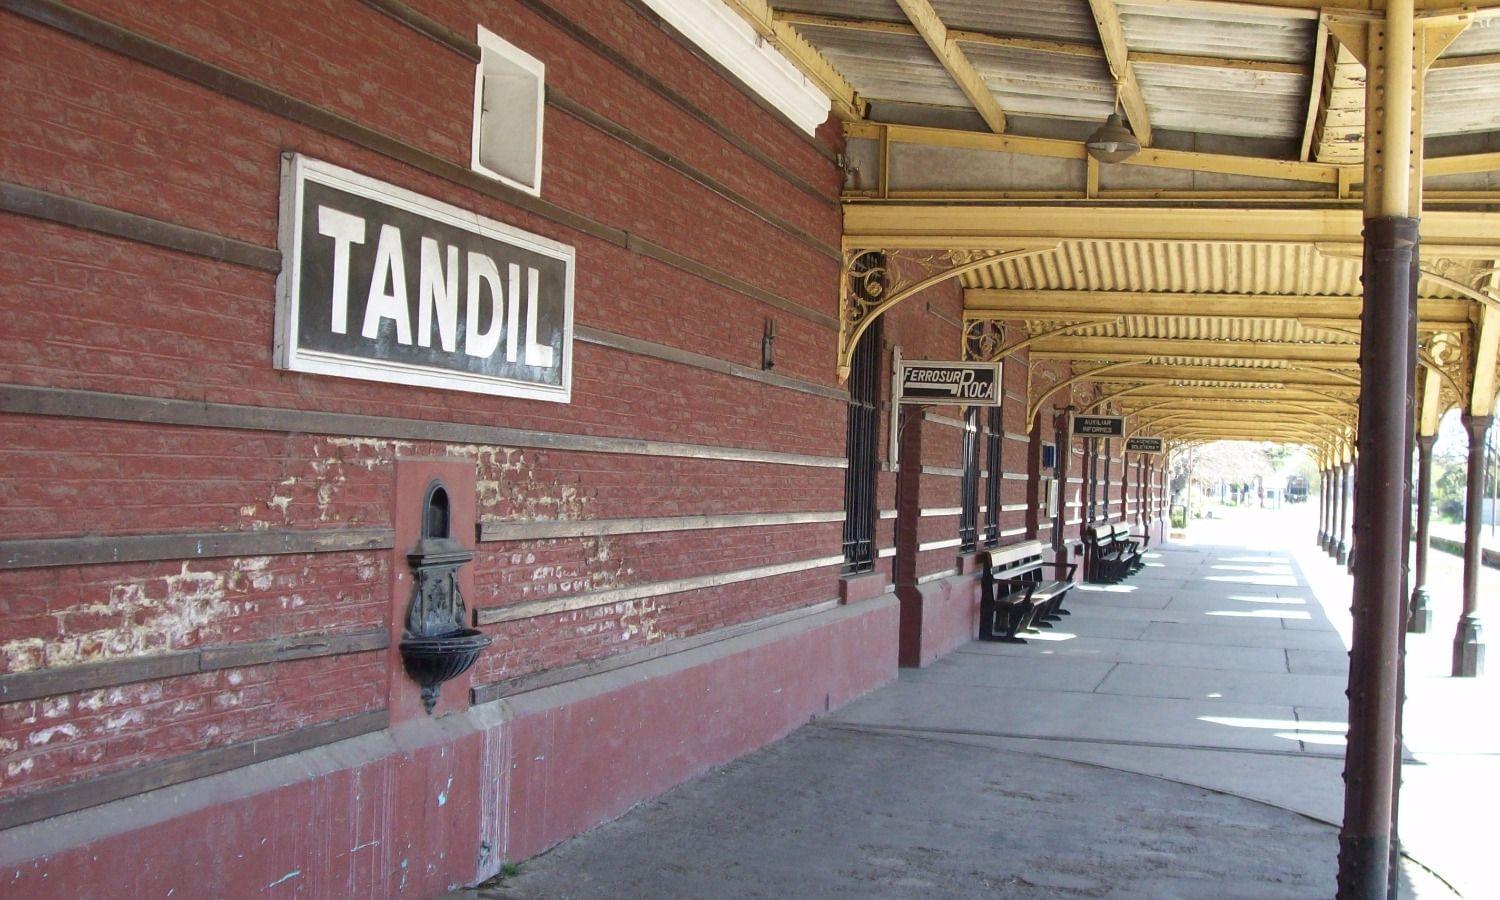 Un nuevo acto de vandalismo en la Estación del Ferrocarril: ¿De que manera se cuidan los espacios públicos de la ciudad?